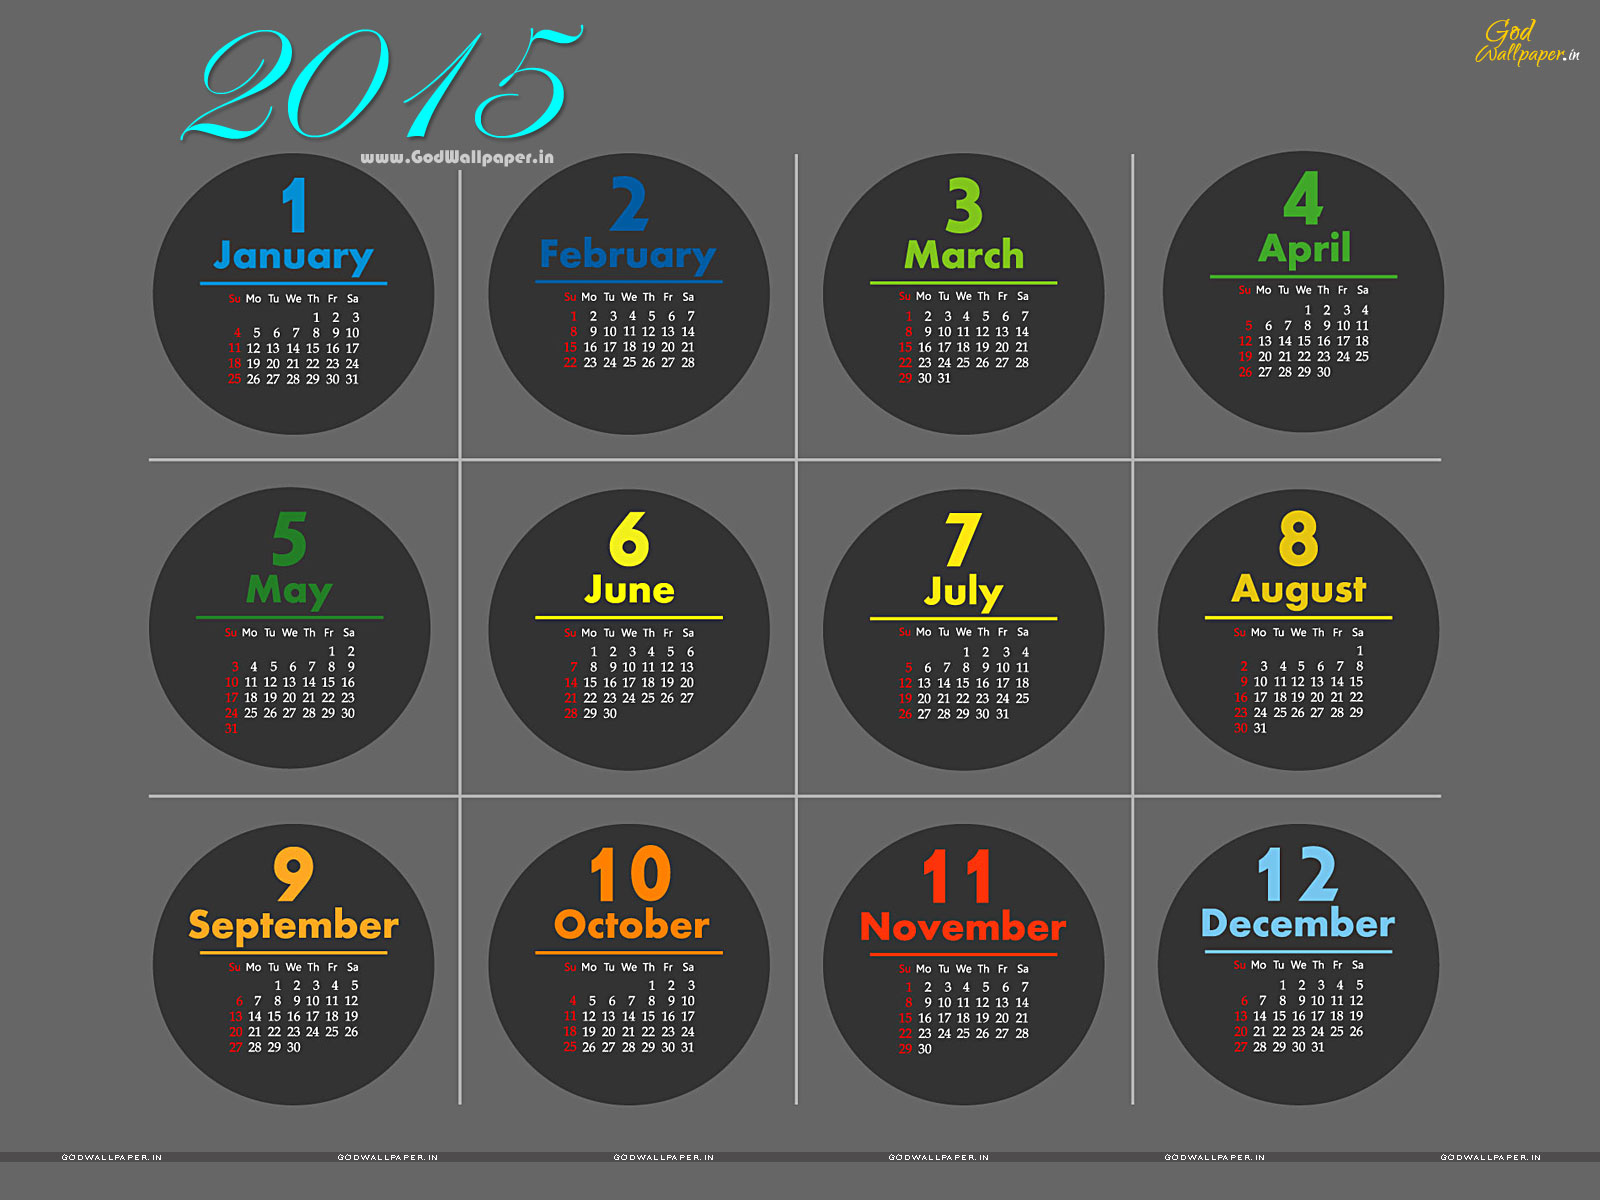 Live Calendar 2015 Wallpaper HD Free Download